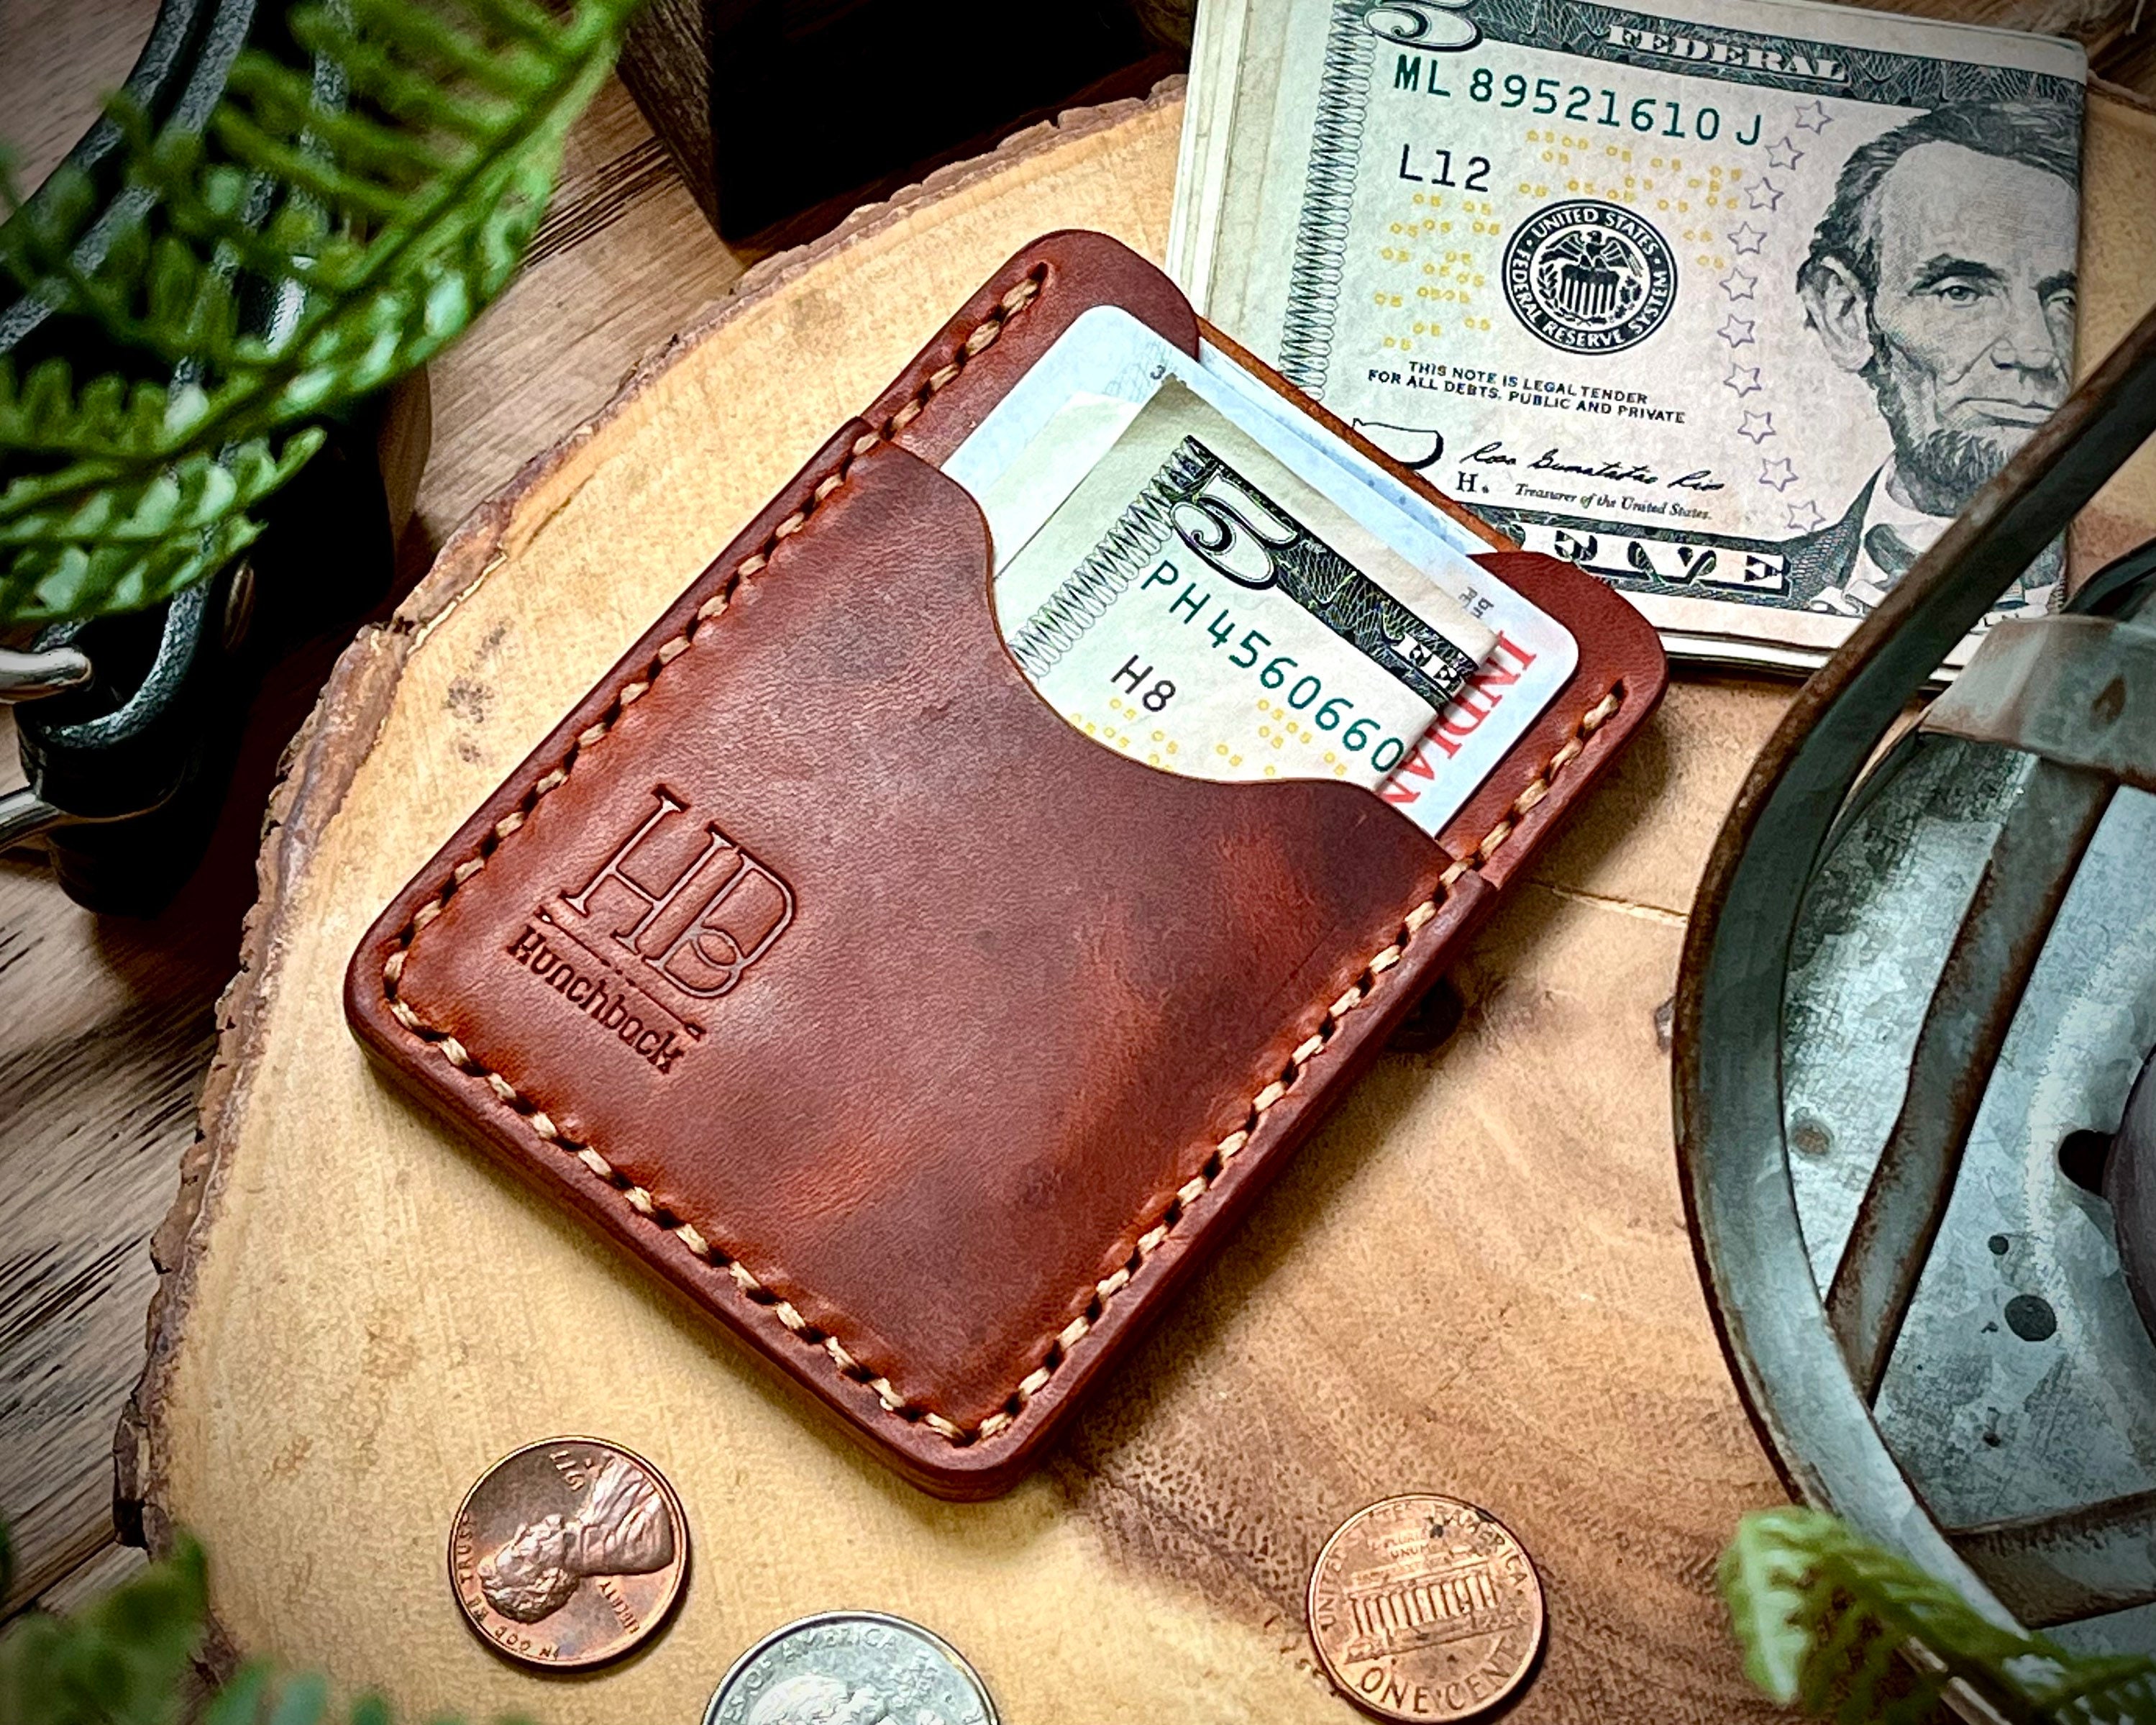 Genuine Leather Black Minimalist Wallet, Card Holder Pocket Slim Wallet  Benchmad